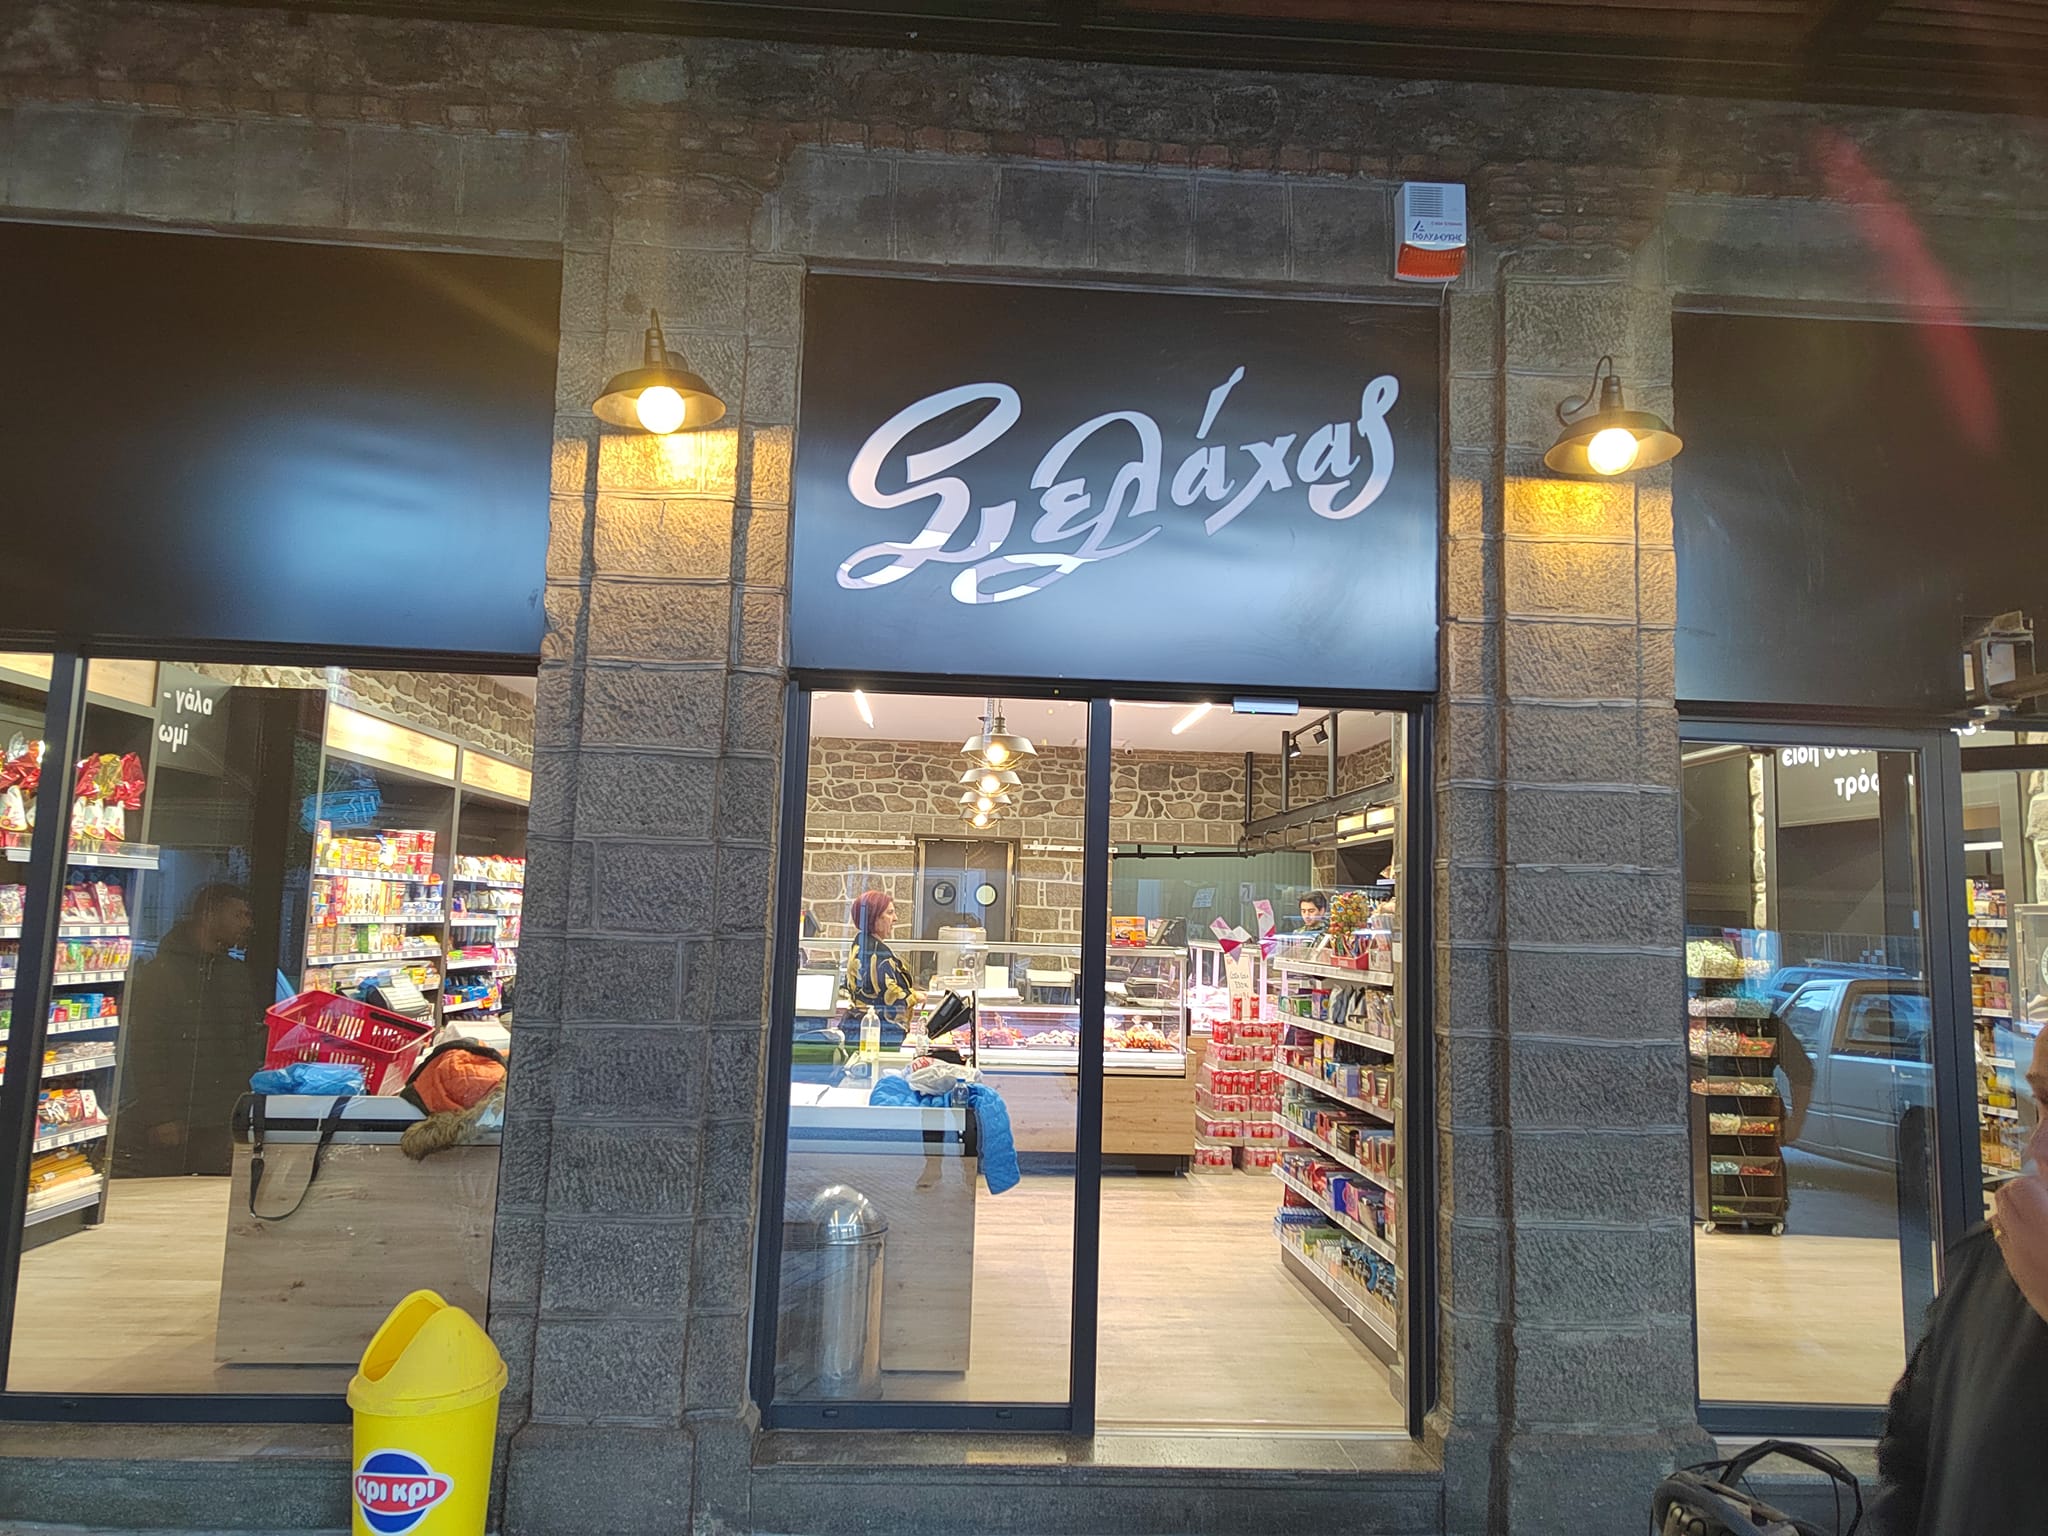 Άνοιξε ανανεωμένο το  Super Market Σελάχας στην Καλλονή